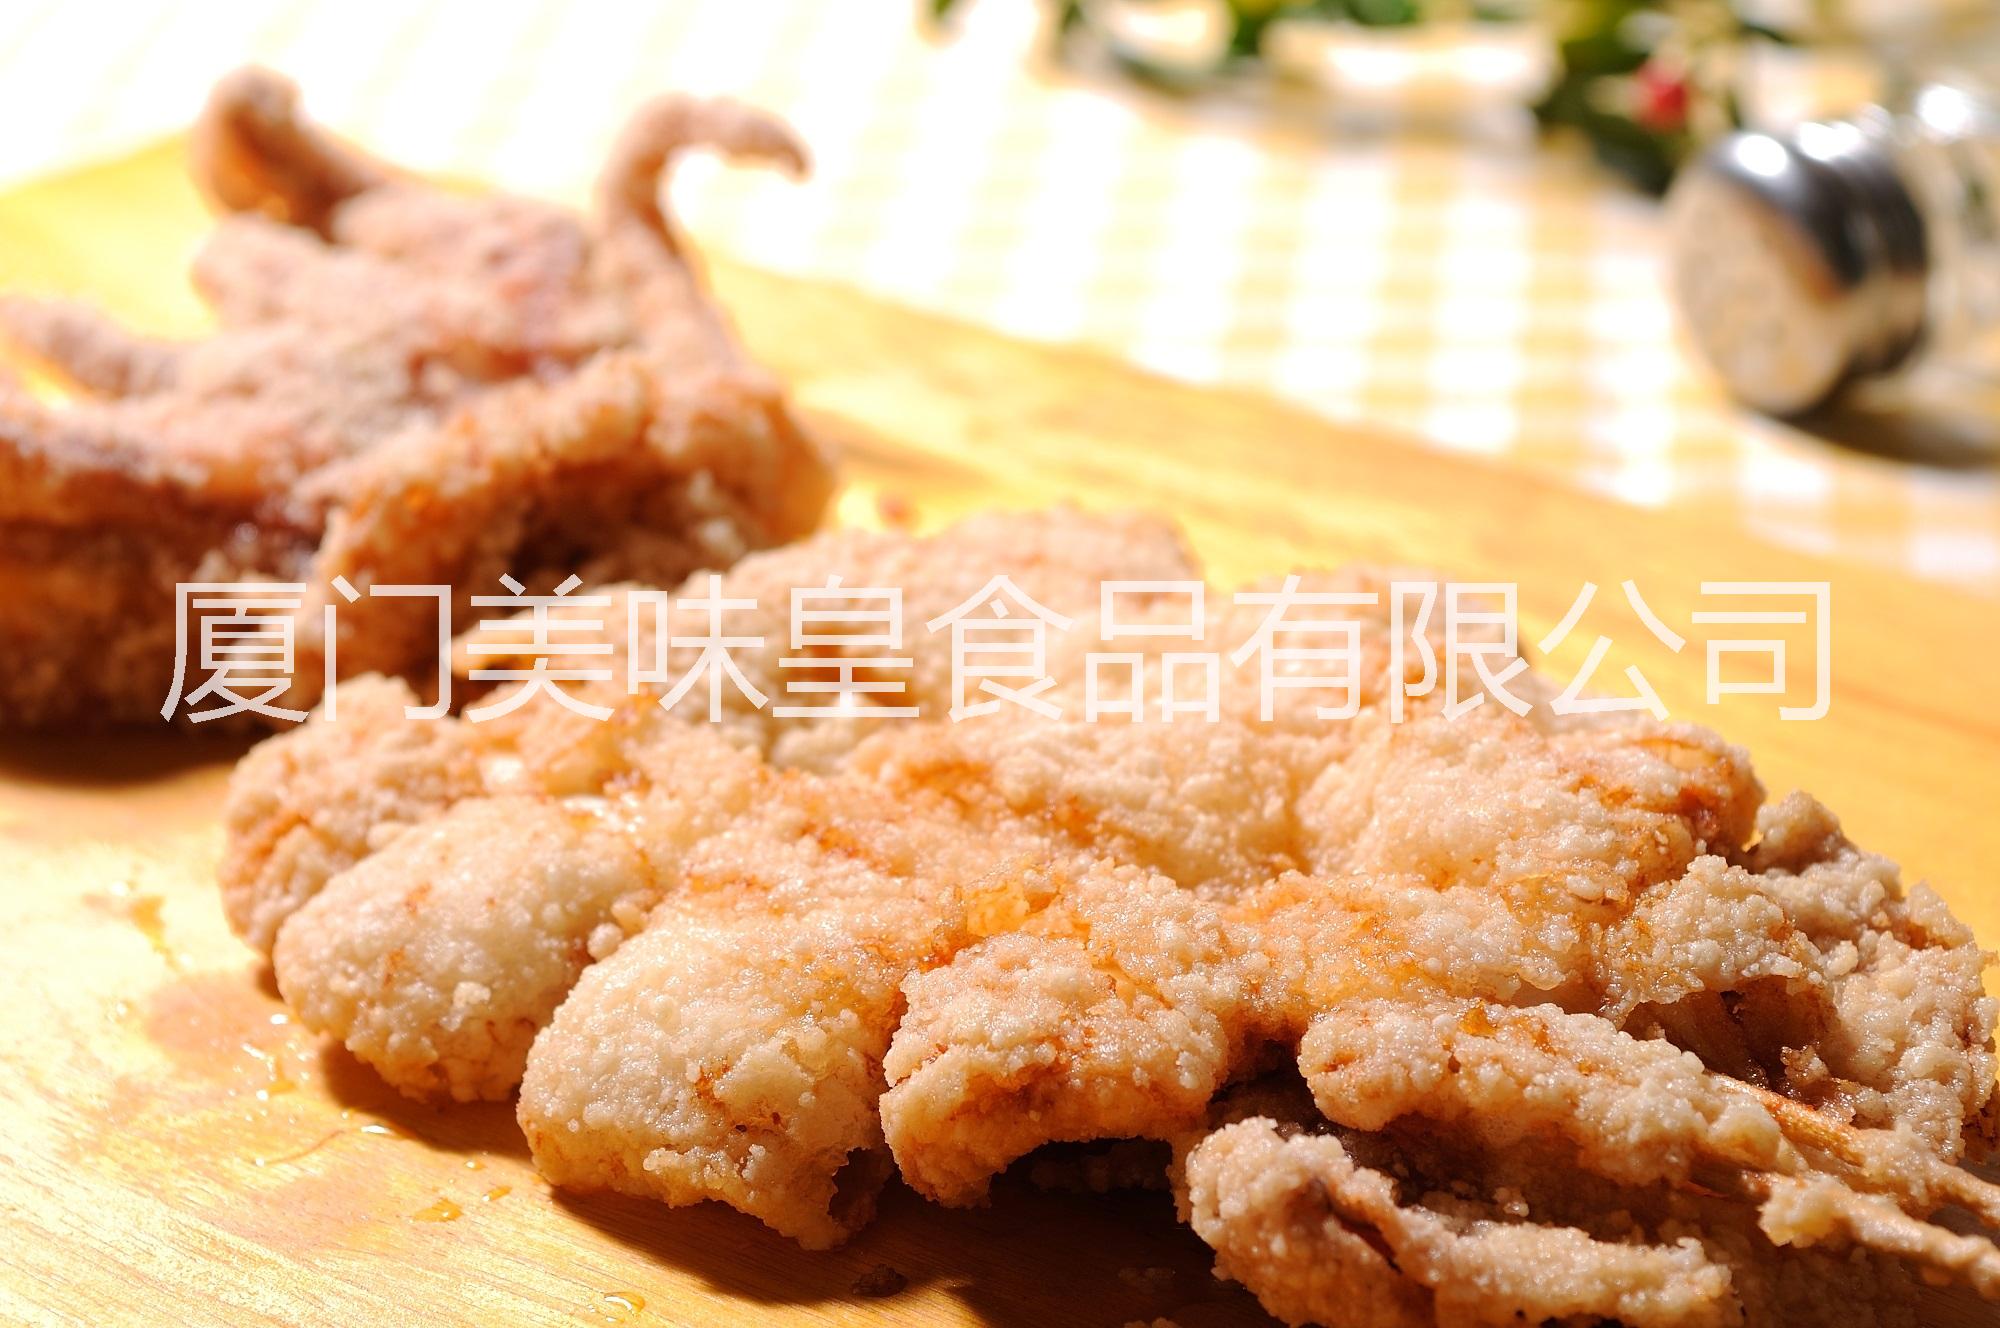 供应用于轰炸大鱿鱼|魷魚条的美味皇台湾小吃原料轰炸大鱿鱼图片